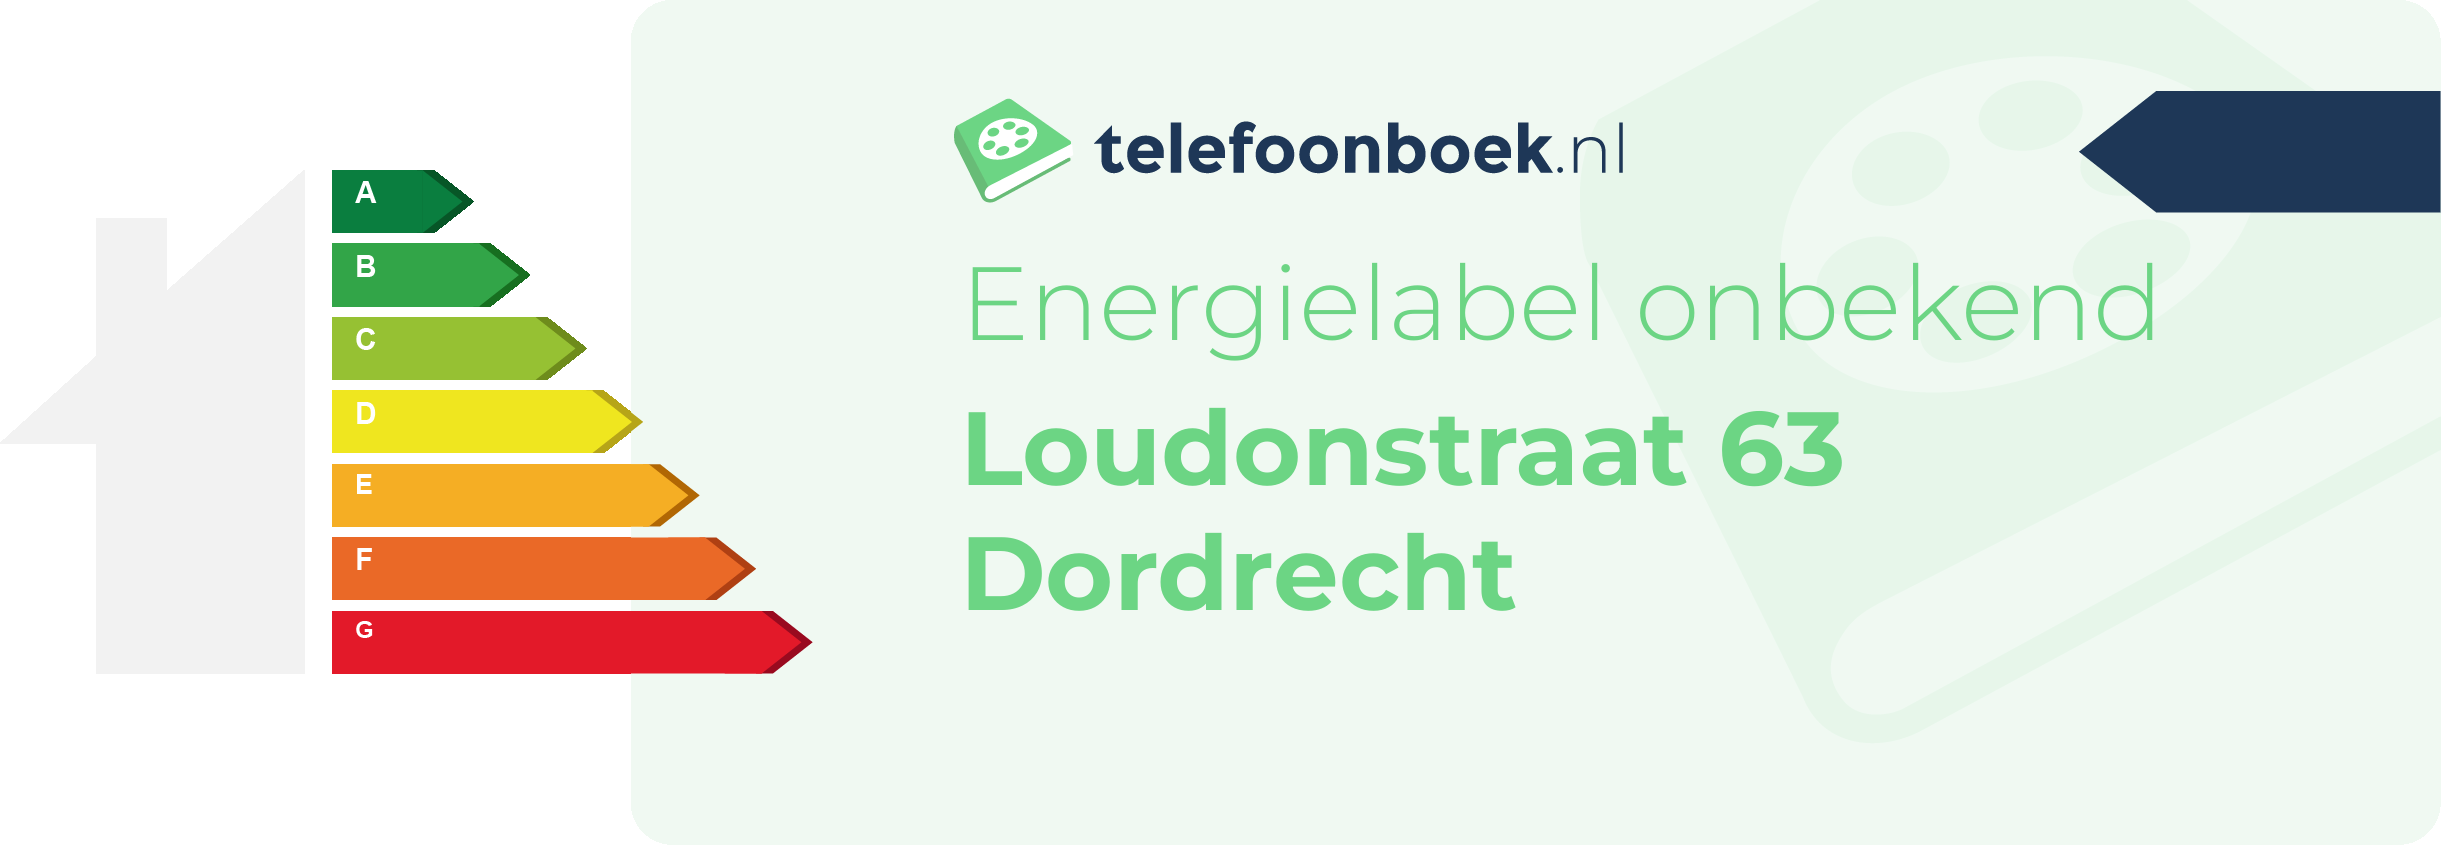 Energielabel Loudonstraat 63 Dordrecht